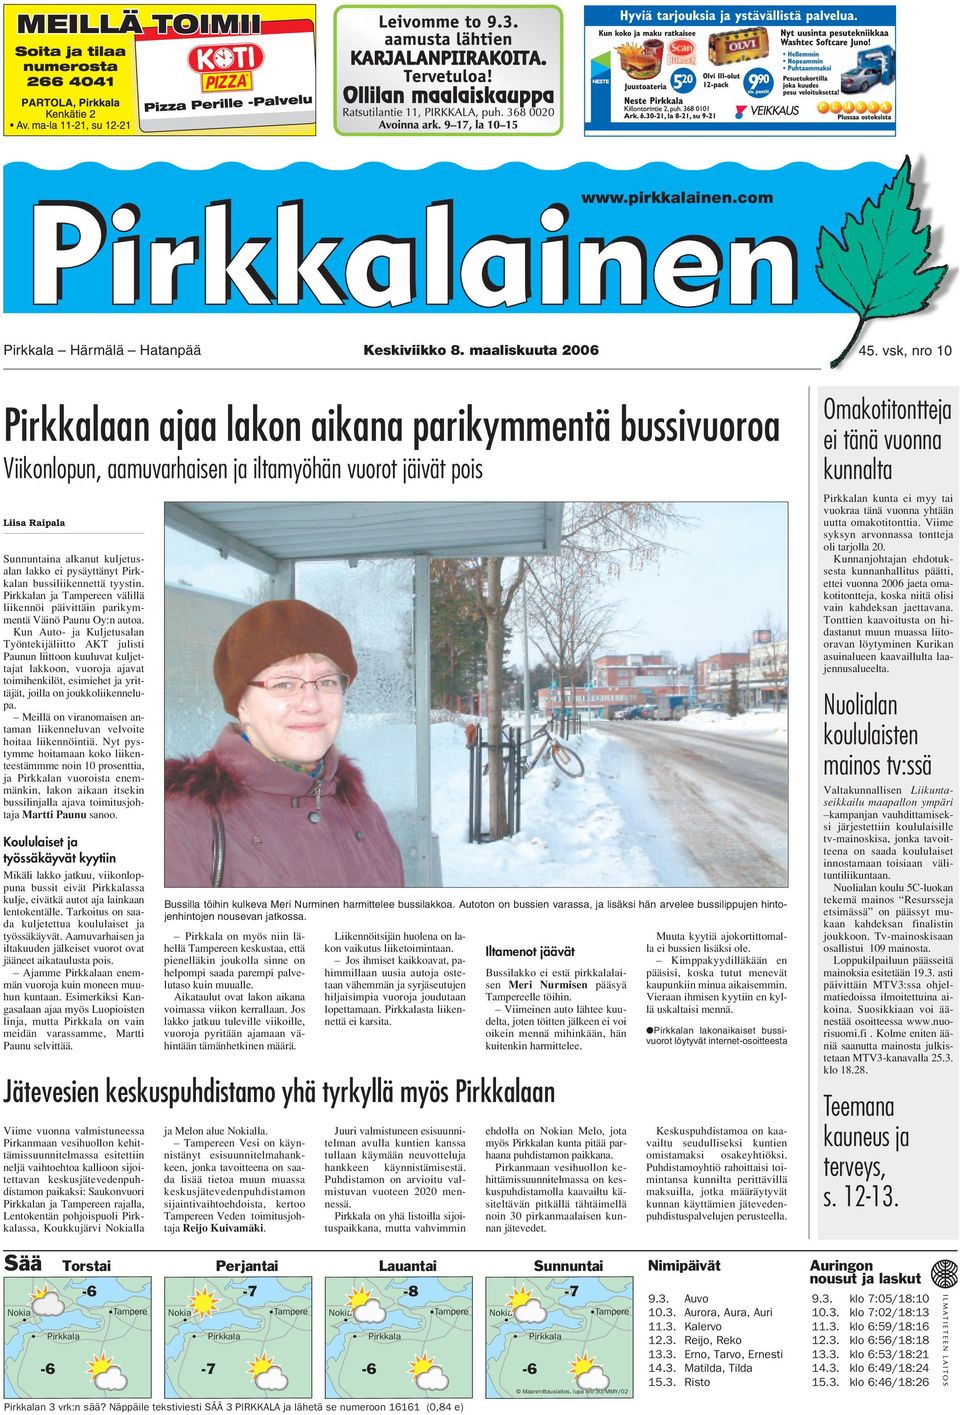 Pirkkalan bussiliikennettä tyystin. Pirkkalan ja Tampereen välillä liikennöi päivittäin parikymmentä Väinö Paunu Oy:n autoa.